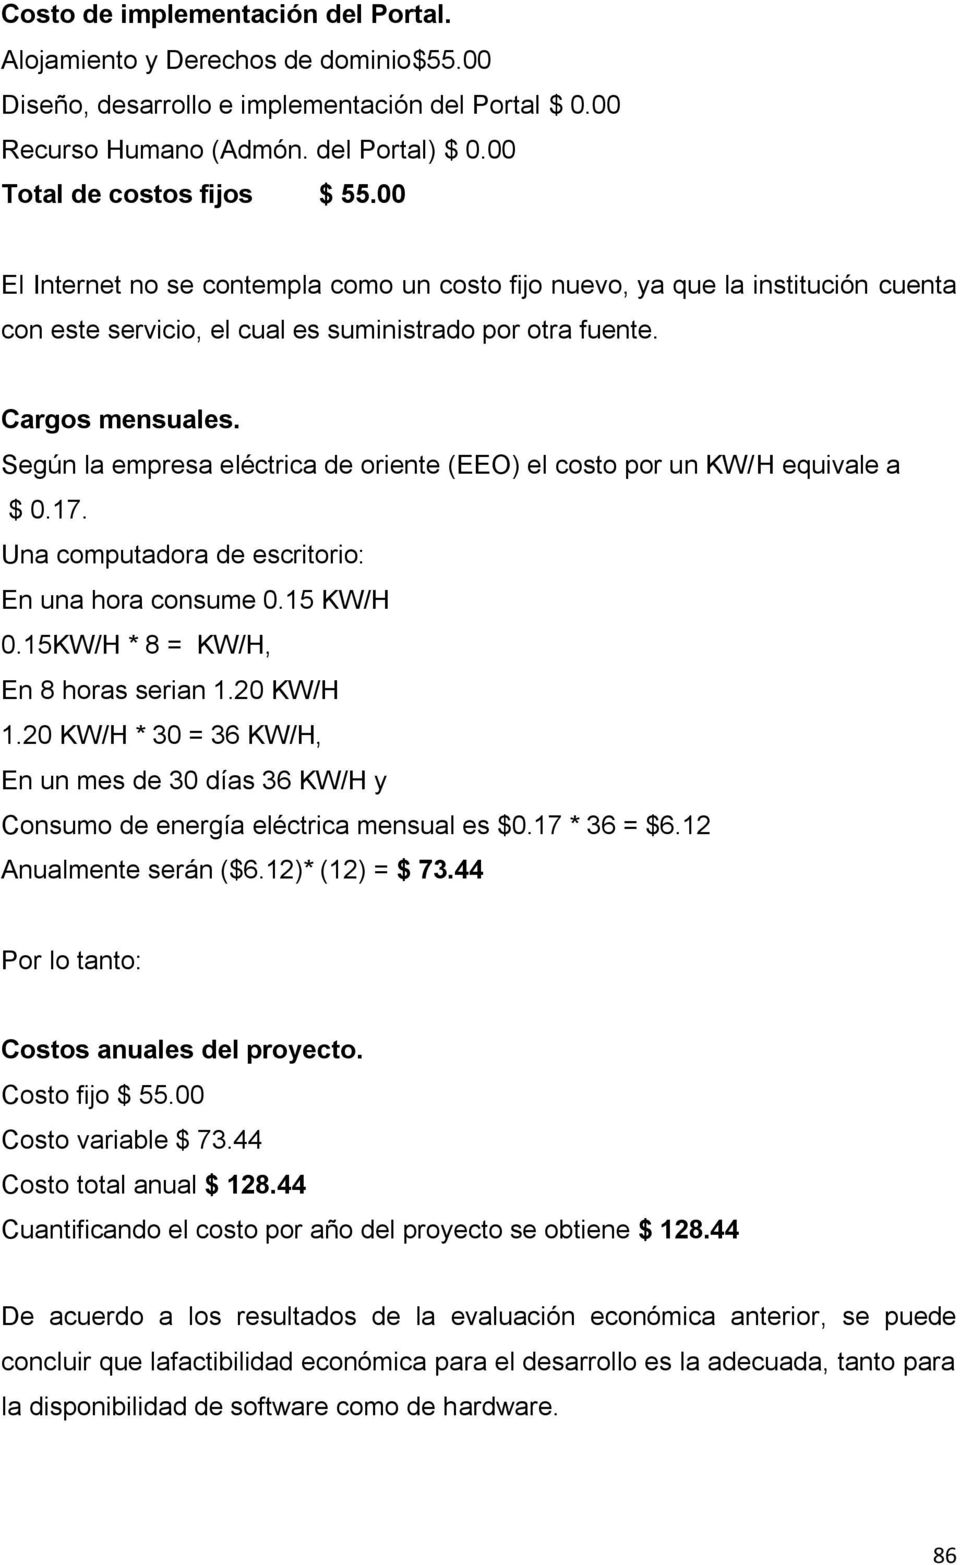 Según la empresa eléctrica de oriente (EEO) el costo por un KW/H equivale a $ 0.17. Una computadora de escritorio: En una hora consume 0.15 KW/H 0.15KW/H * 8 = KW/H, En 8 horas serian 1.20 KW/H 1.